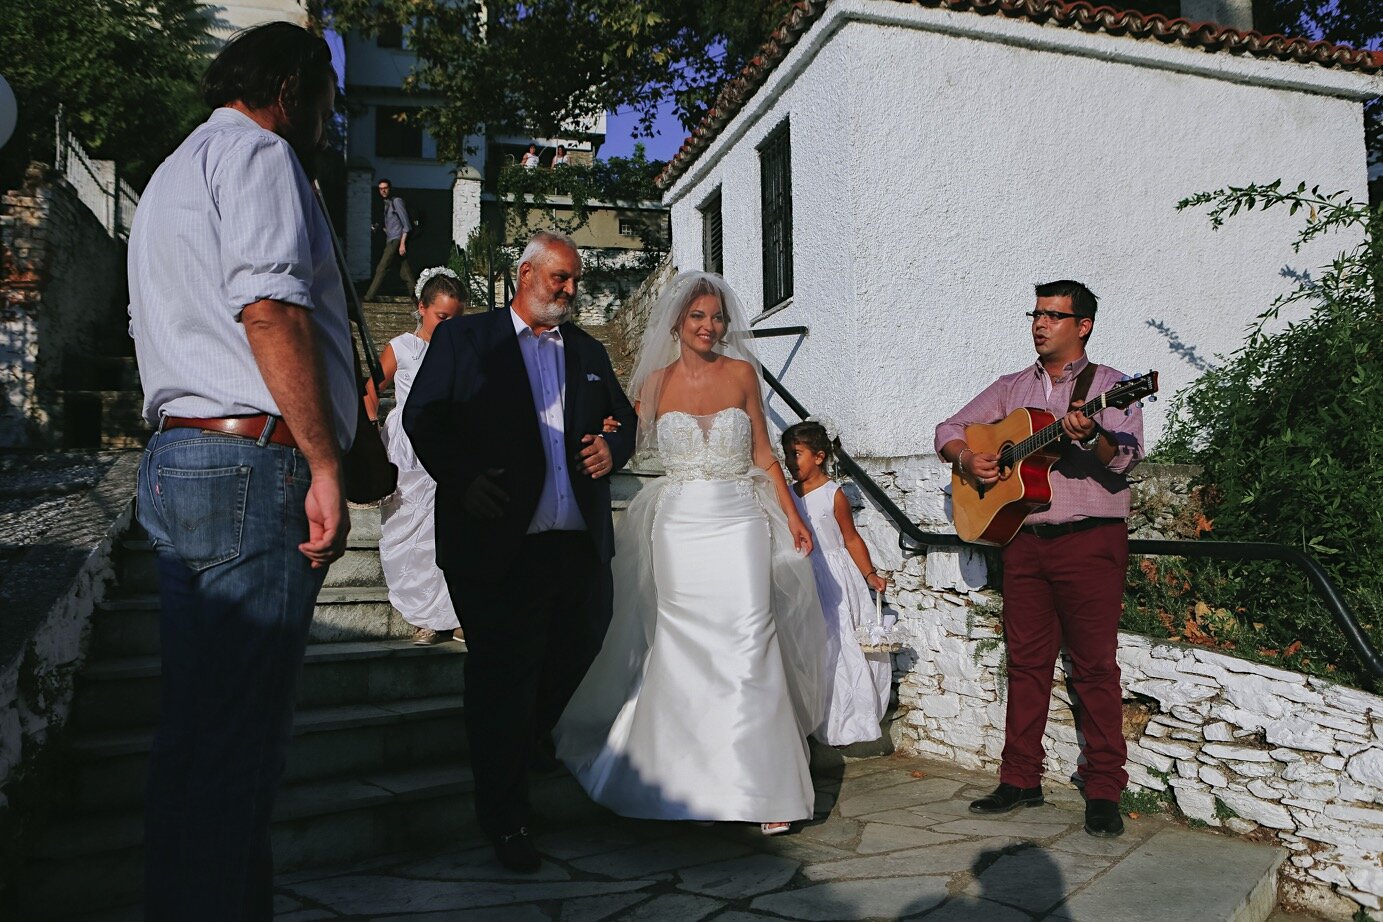 Wedding_Portaria_Efthimiopoulos_Photography0036.jpg